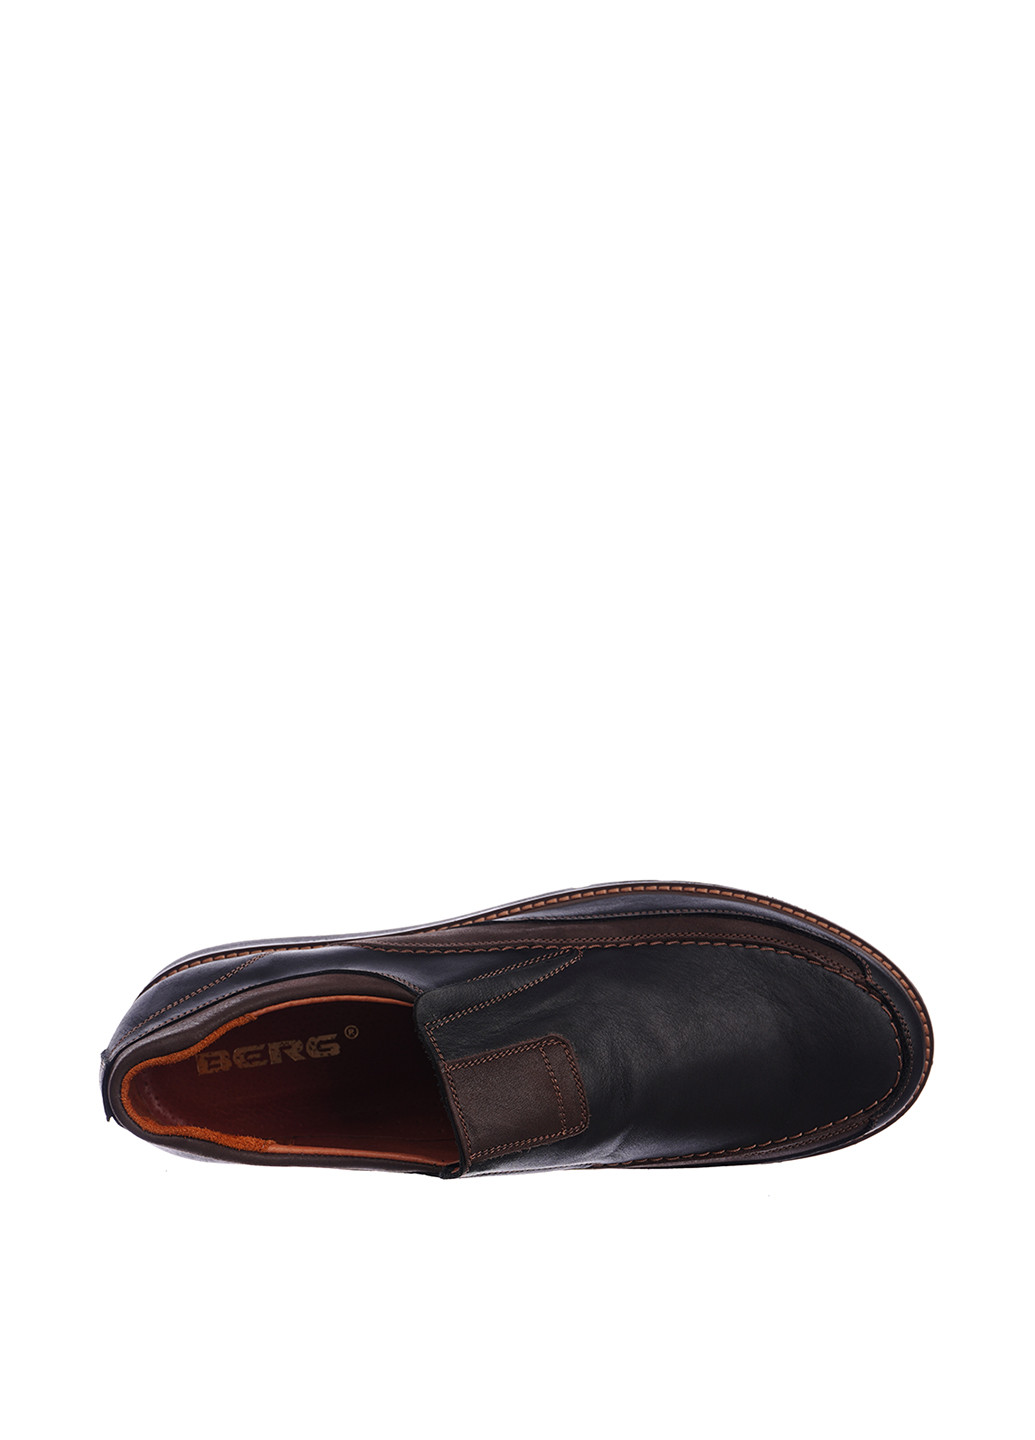 Темно-коричневые кэжуал туфли Berg на резинке